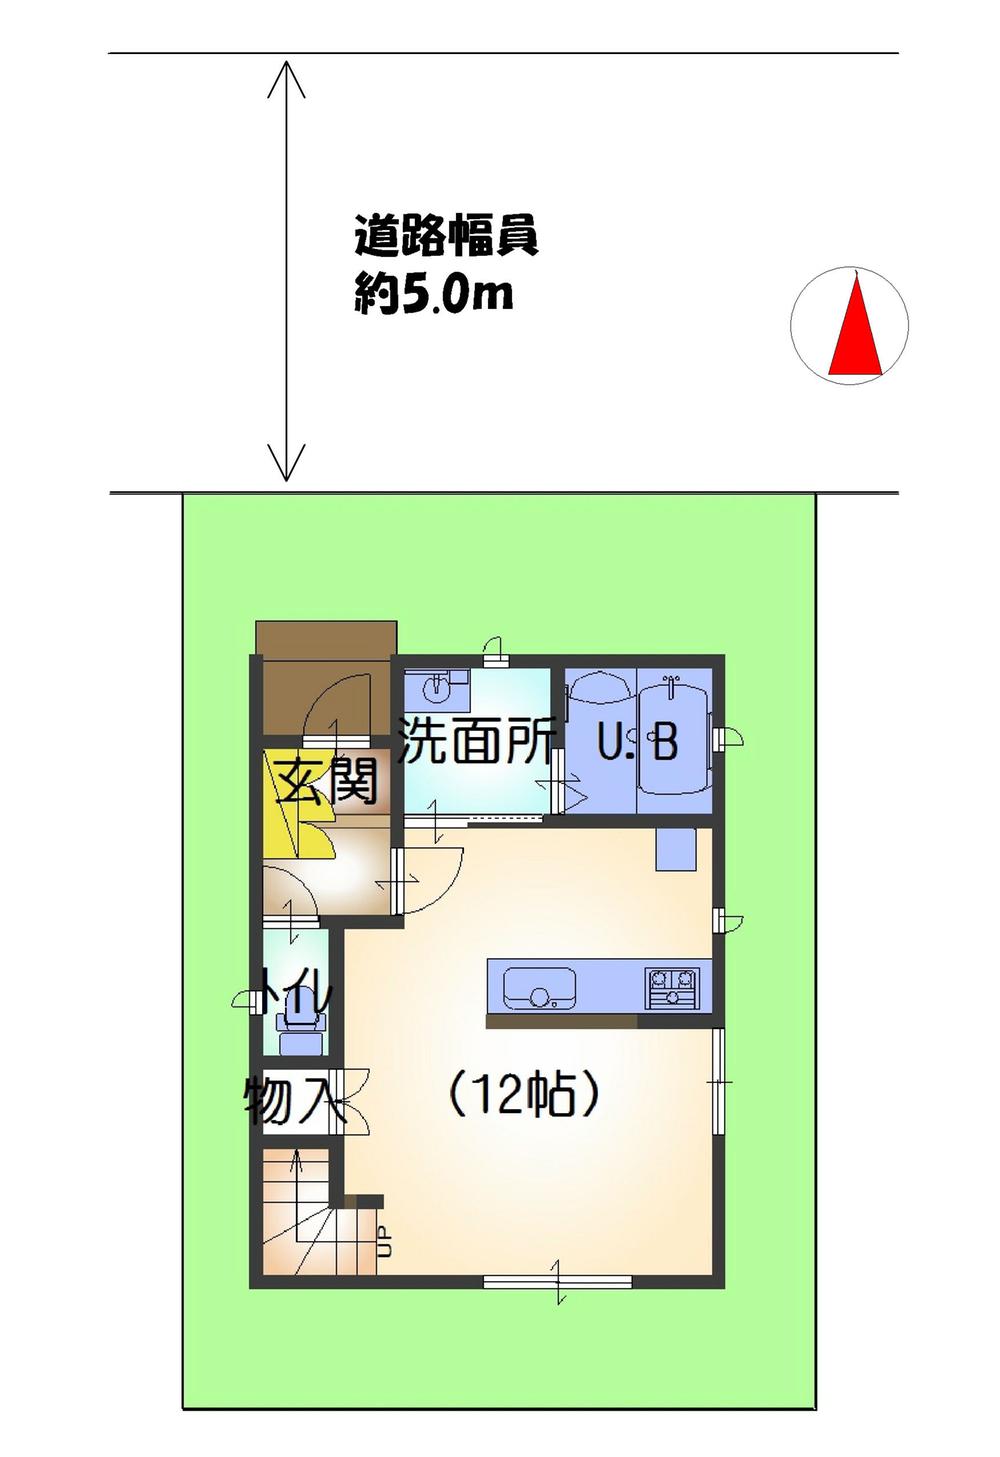 Compartment figure. 27,700,000 yen, 3LDK, Land area 74.17 sq m , Building area 68 sq m